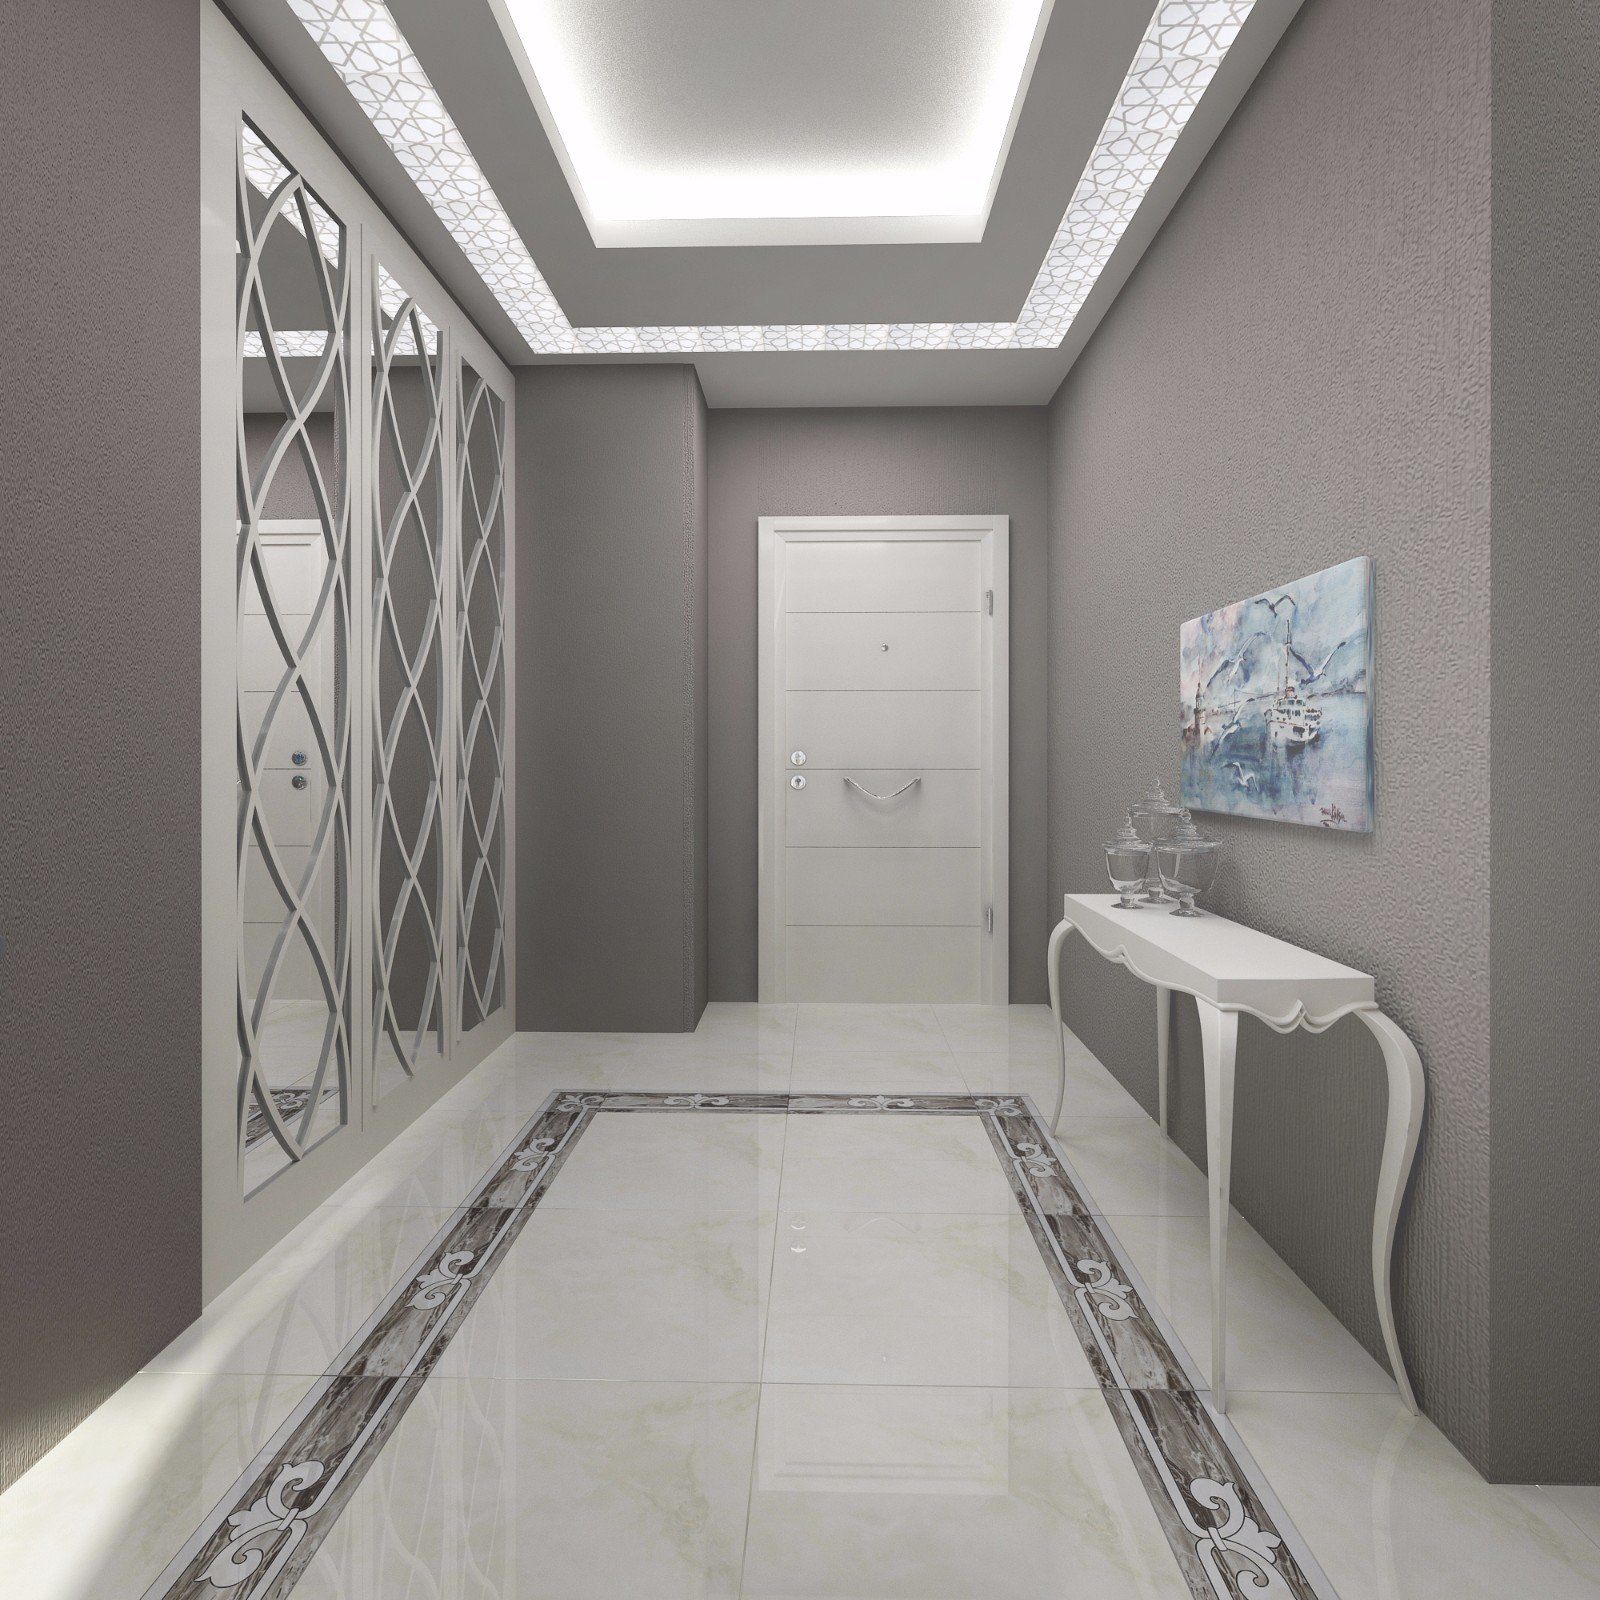 Дизайн потолка коридора из гипсокартона | Смотреть 54 идеи на фото бесплатно